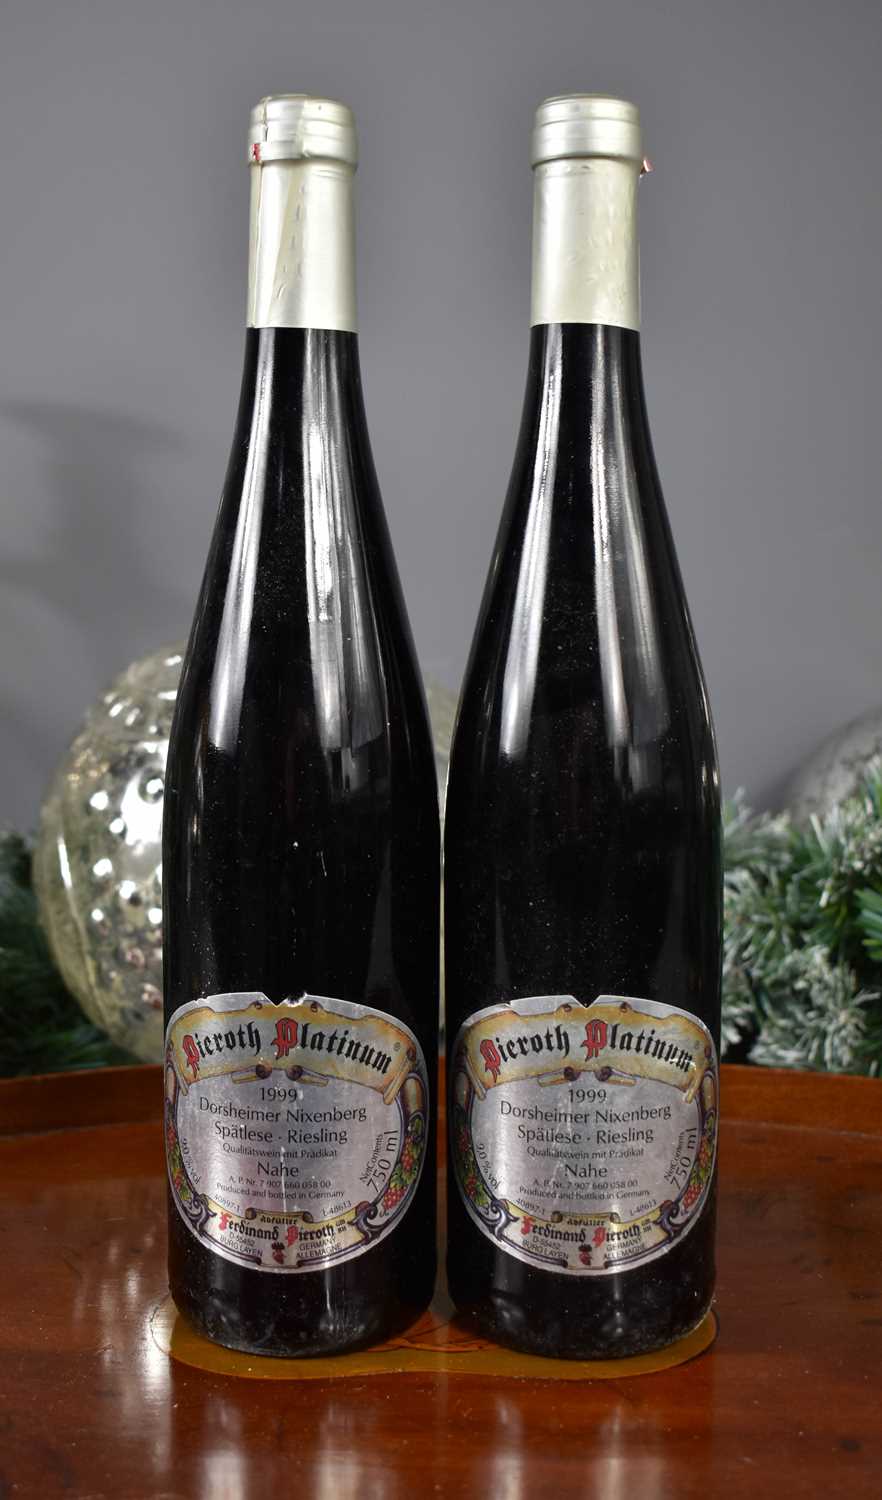 Lot 21 - Two bottles of Dorsheimer Nixenberg, Spatlese...